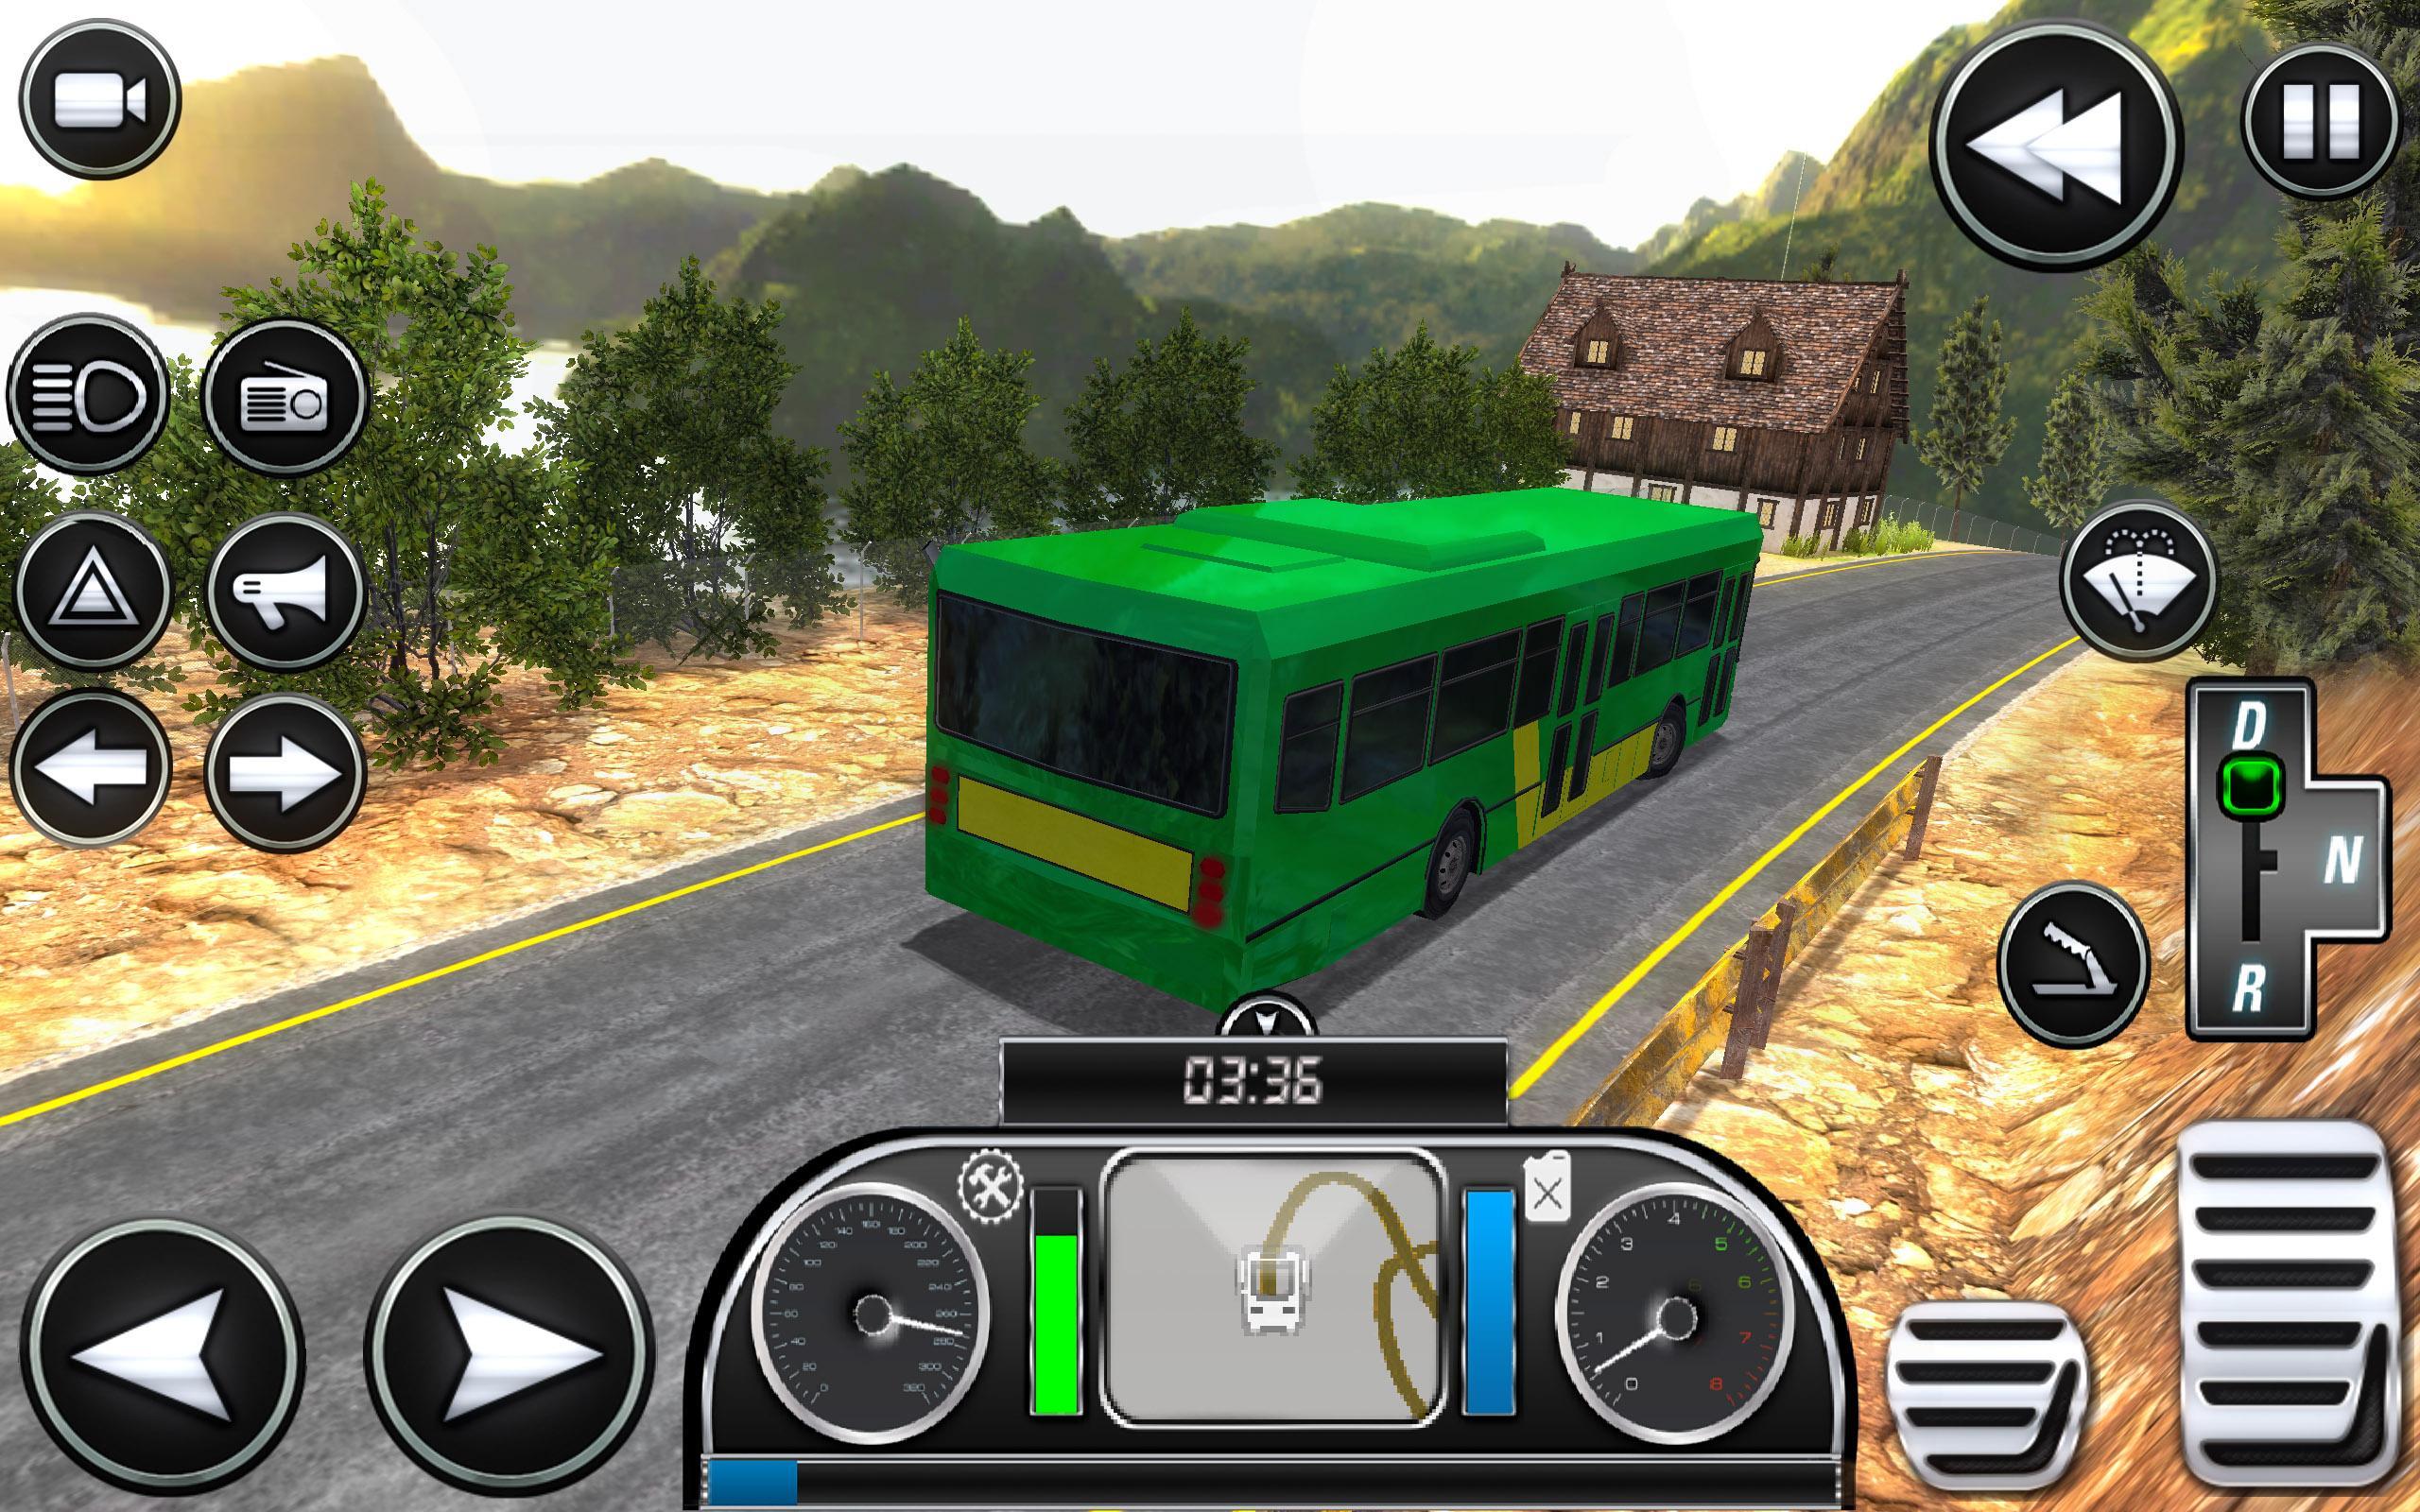 Игра симулятор маршрутки. Симулятор автобуса на андроид. Топ симулятор автобуса. Номера в игре симулятор автобуса. Симуляторы автобусов на андроид с игрой по сети.